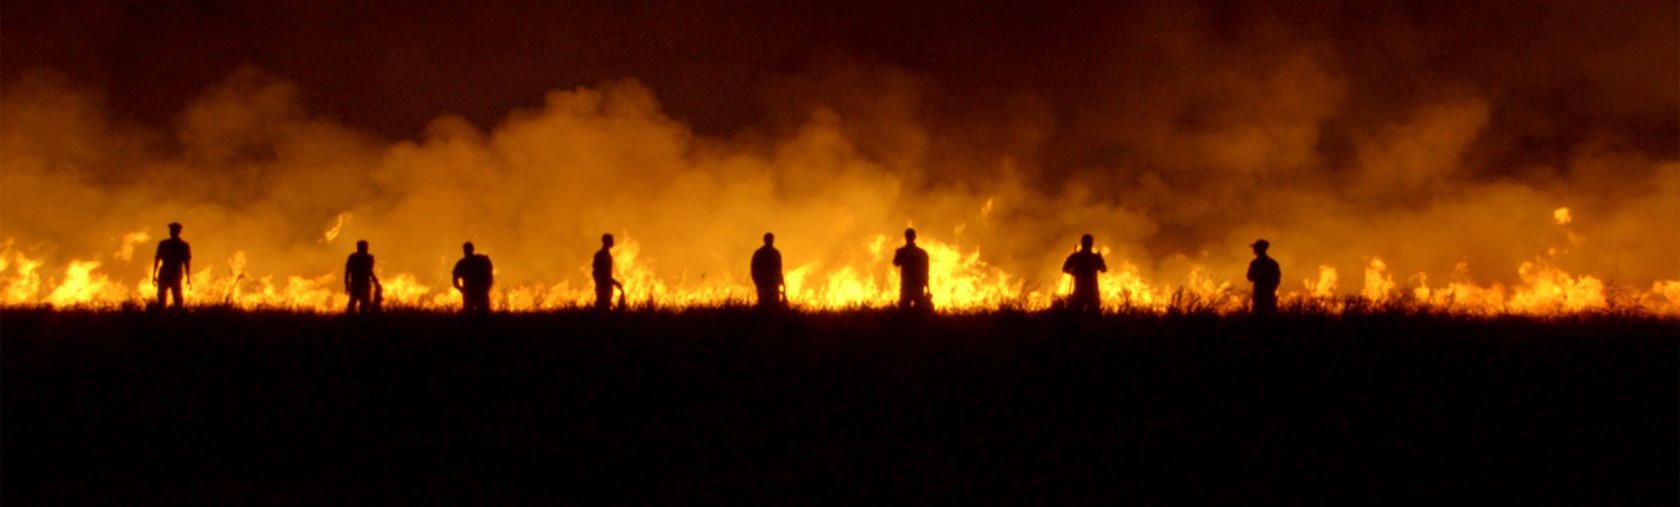 Silhouettes of people walking near field on fire